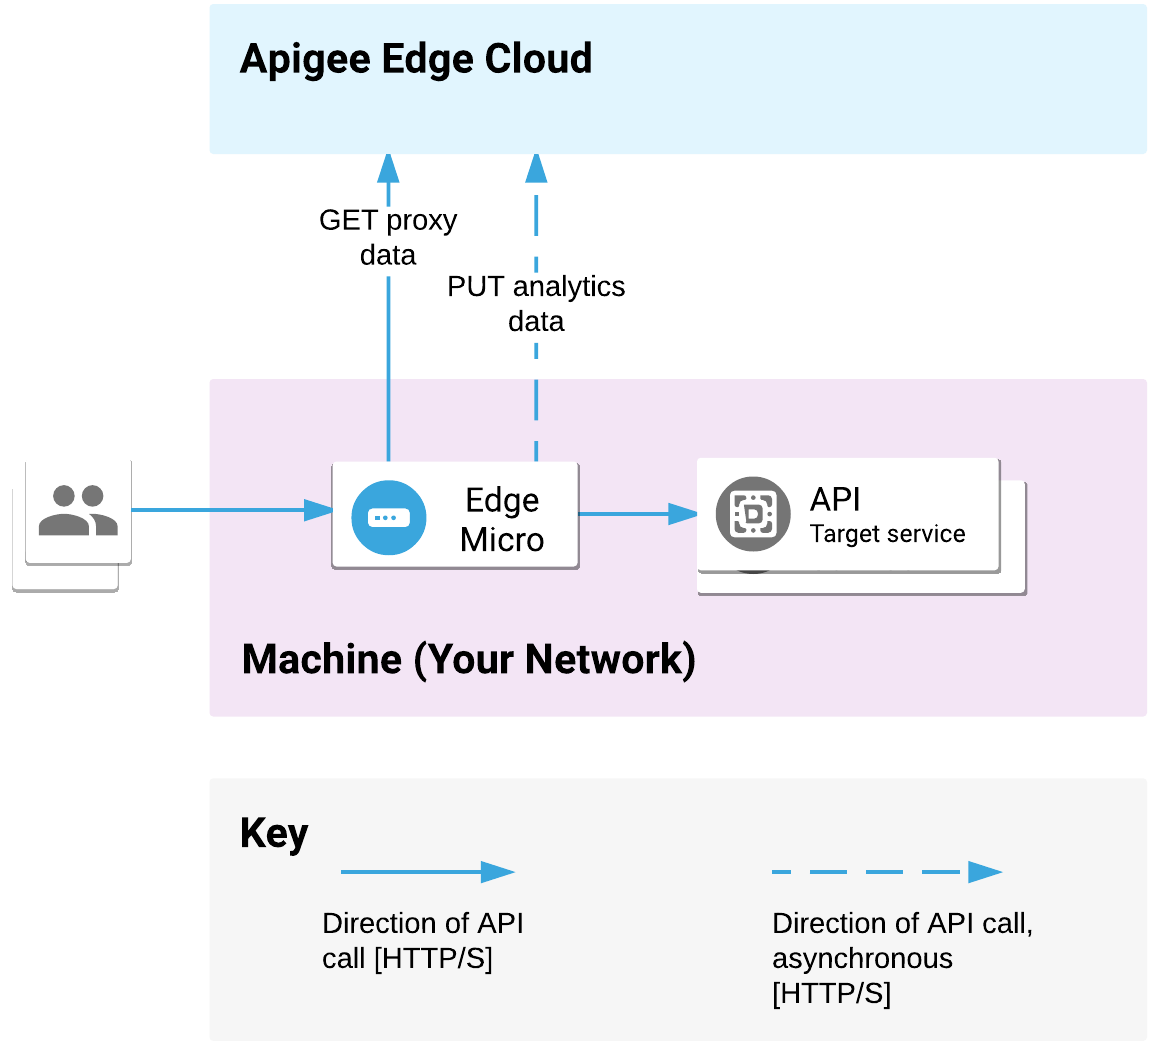 Edge microgateway がネットワークにデプロイされます。クライアントからの API リクエストを処理し、ターゲット サービスを呼び出します。microgateway は Apigee Edge Cloud とプロキシと分析のデータをやり取りします。